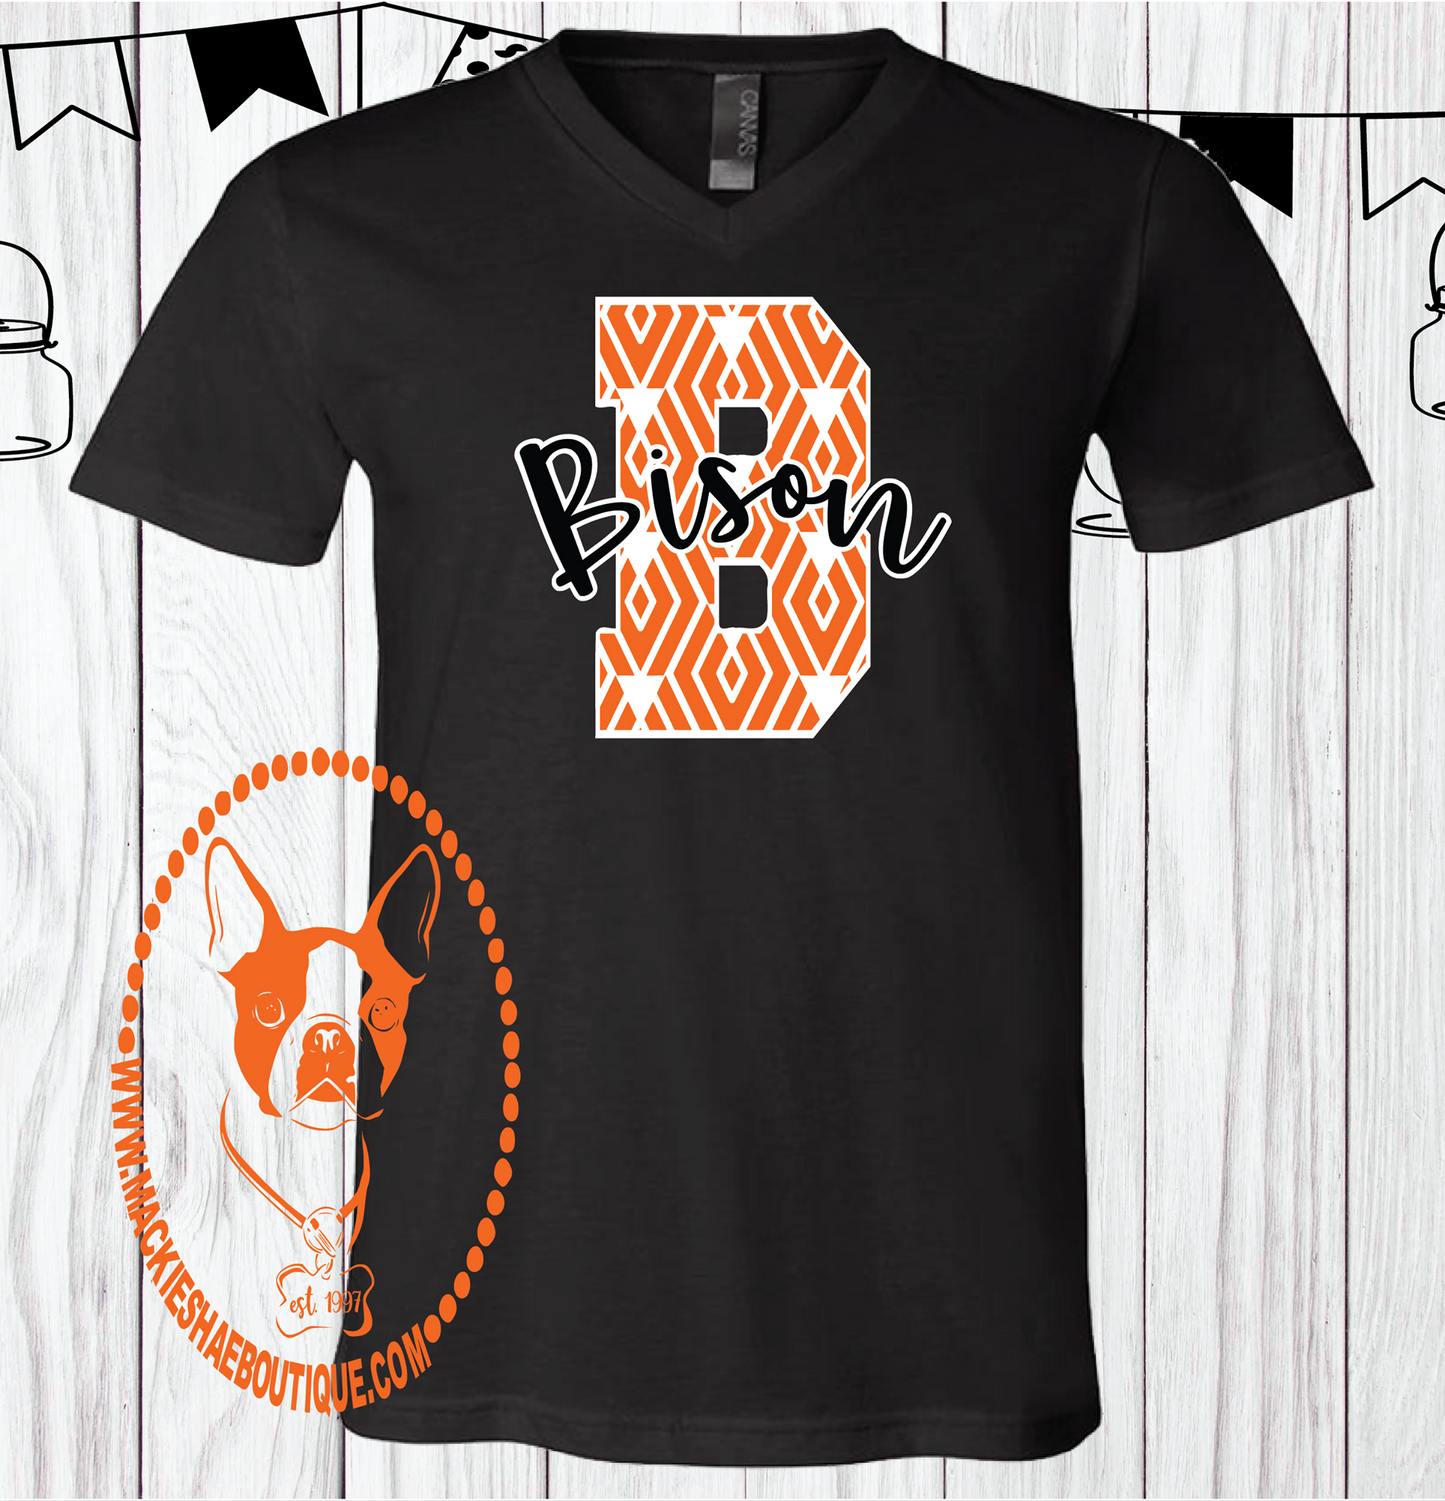 B for Bison Custom Shirt, Short Sleeve